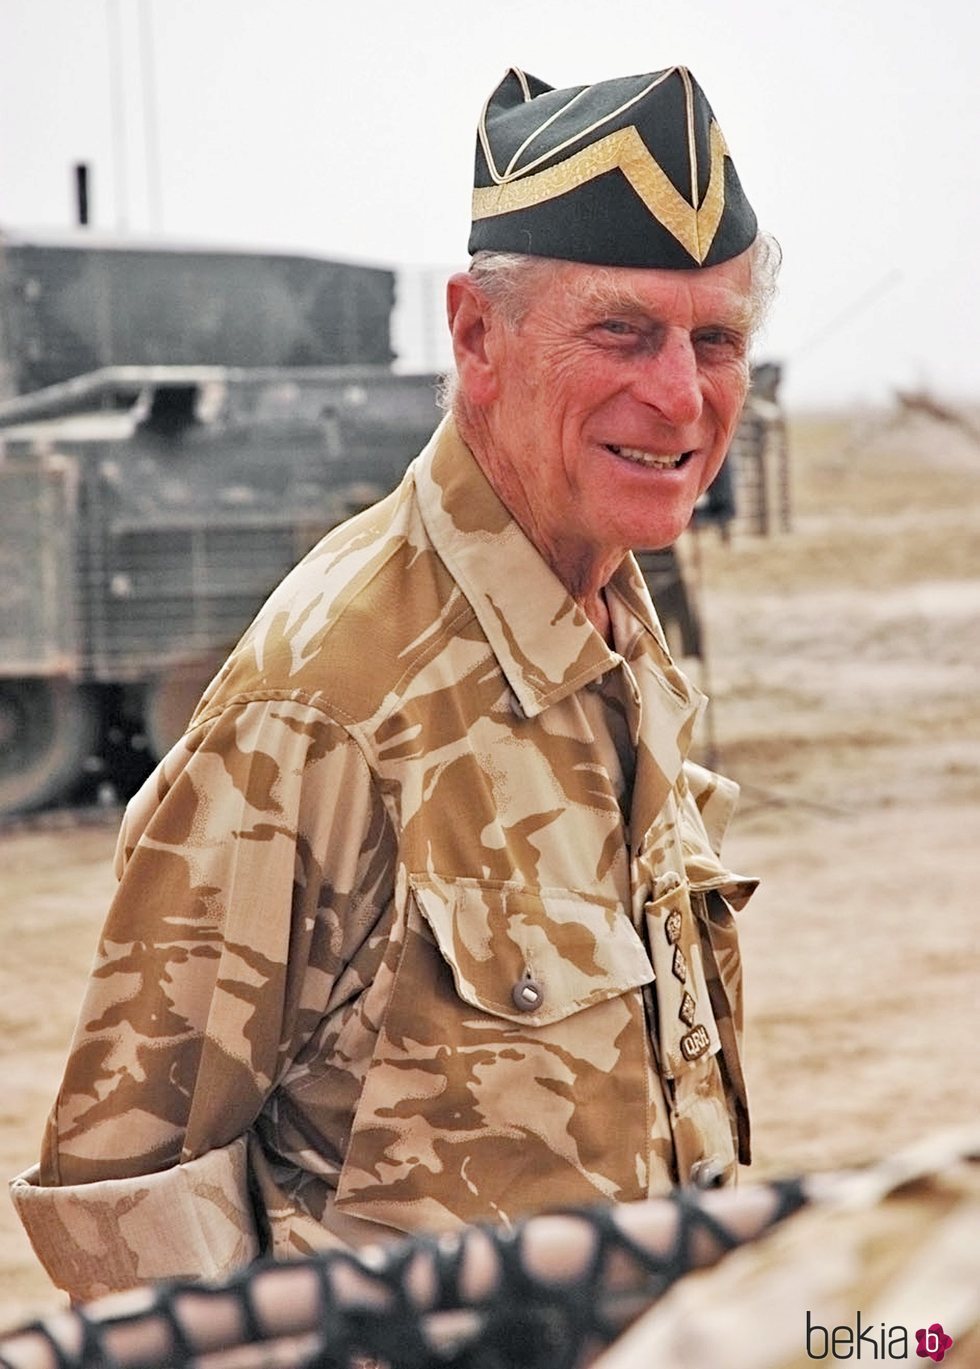 El Duque de Edimburgo en Irak